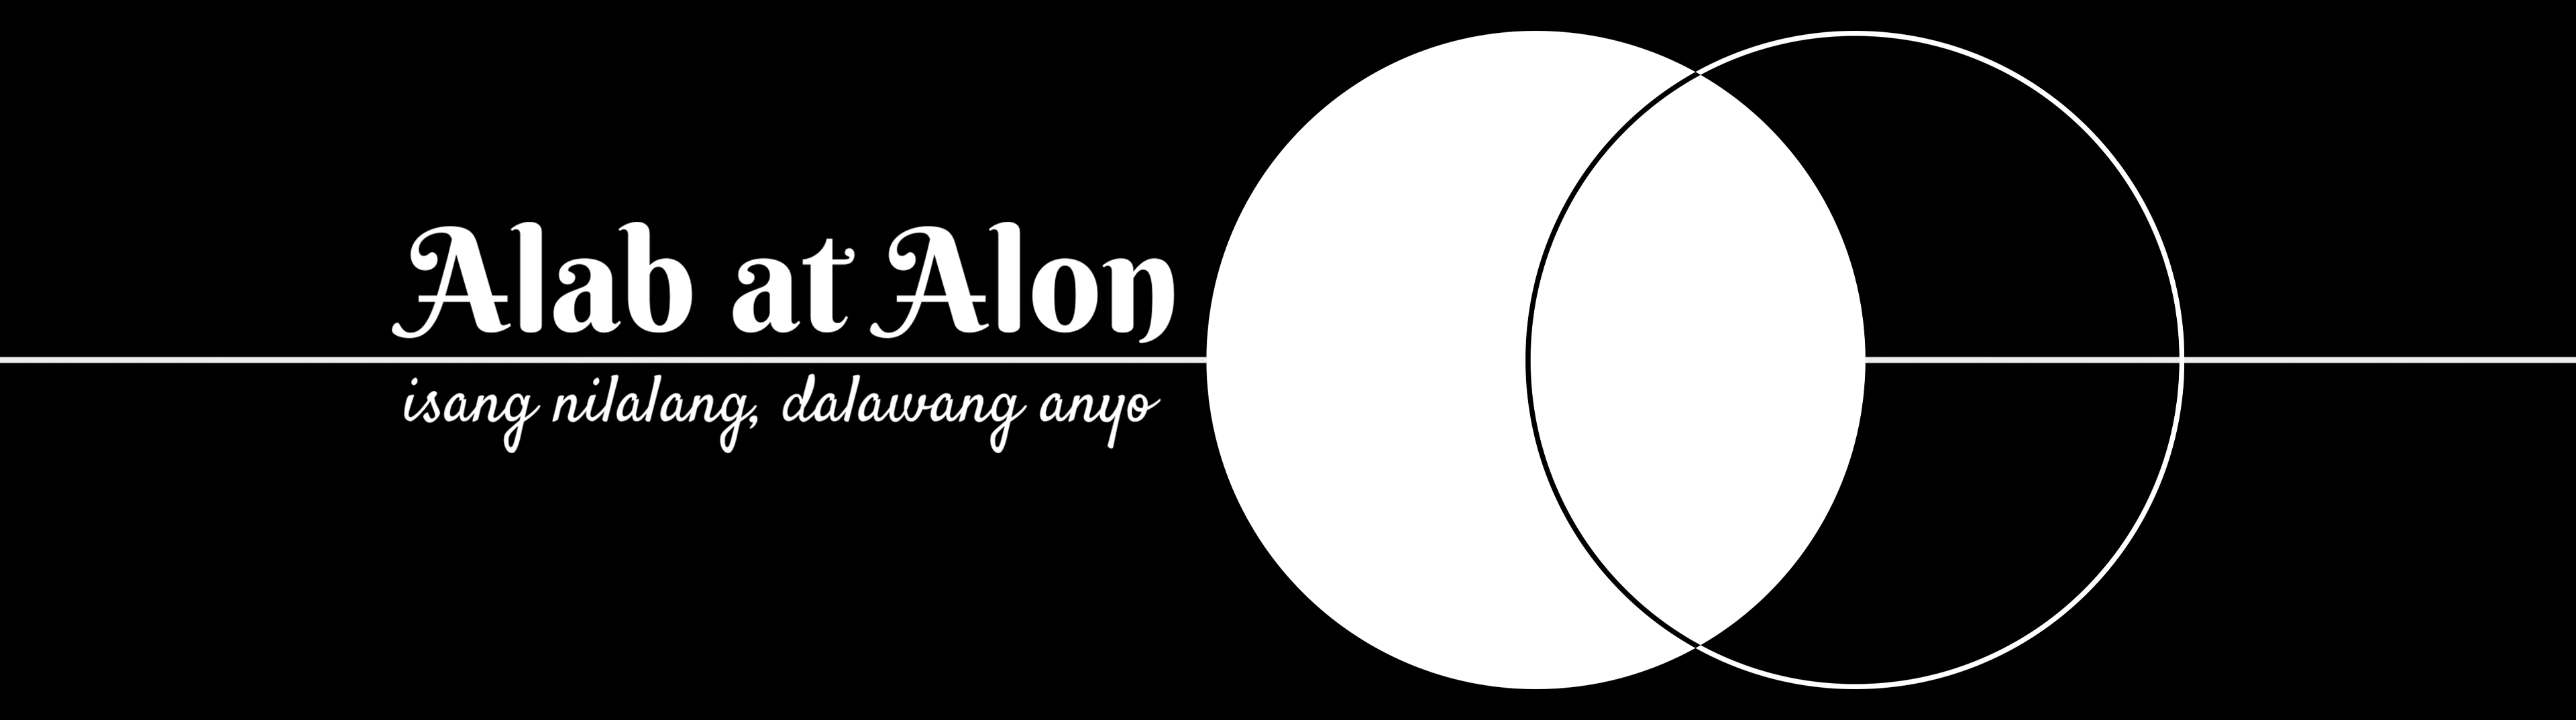 Alab at Alon: isang nilalang, dalawang anyo